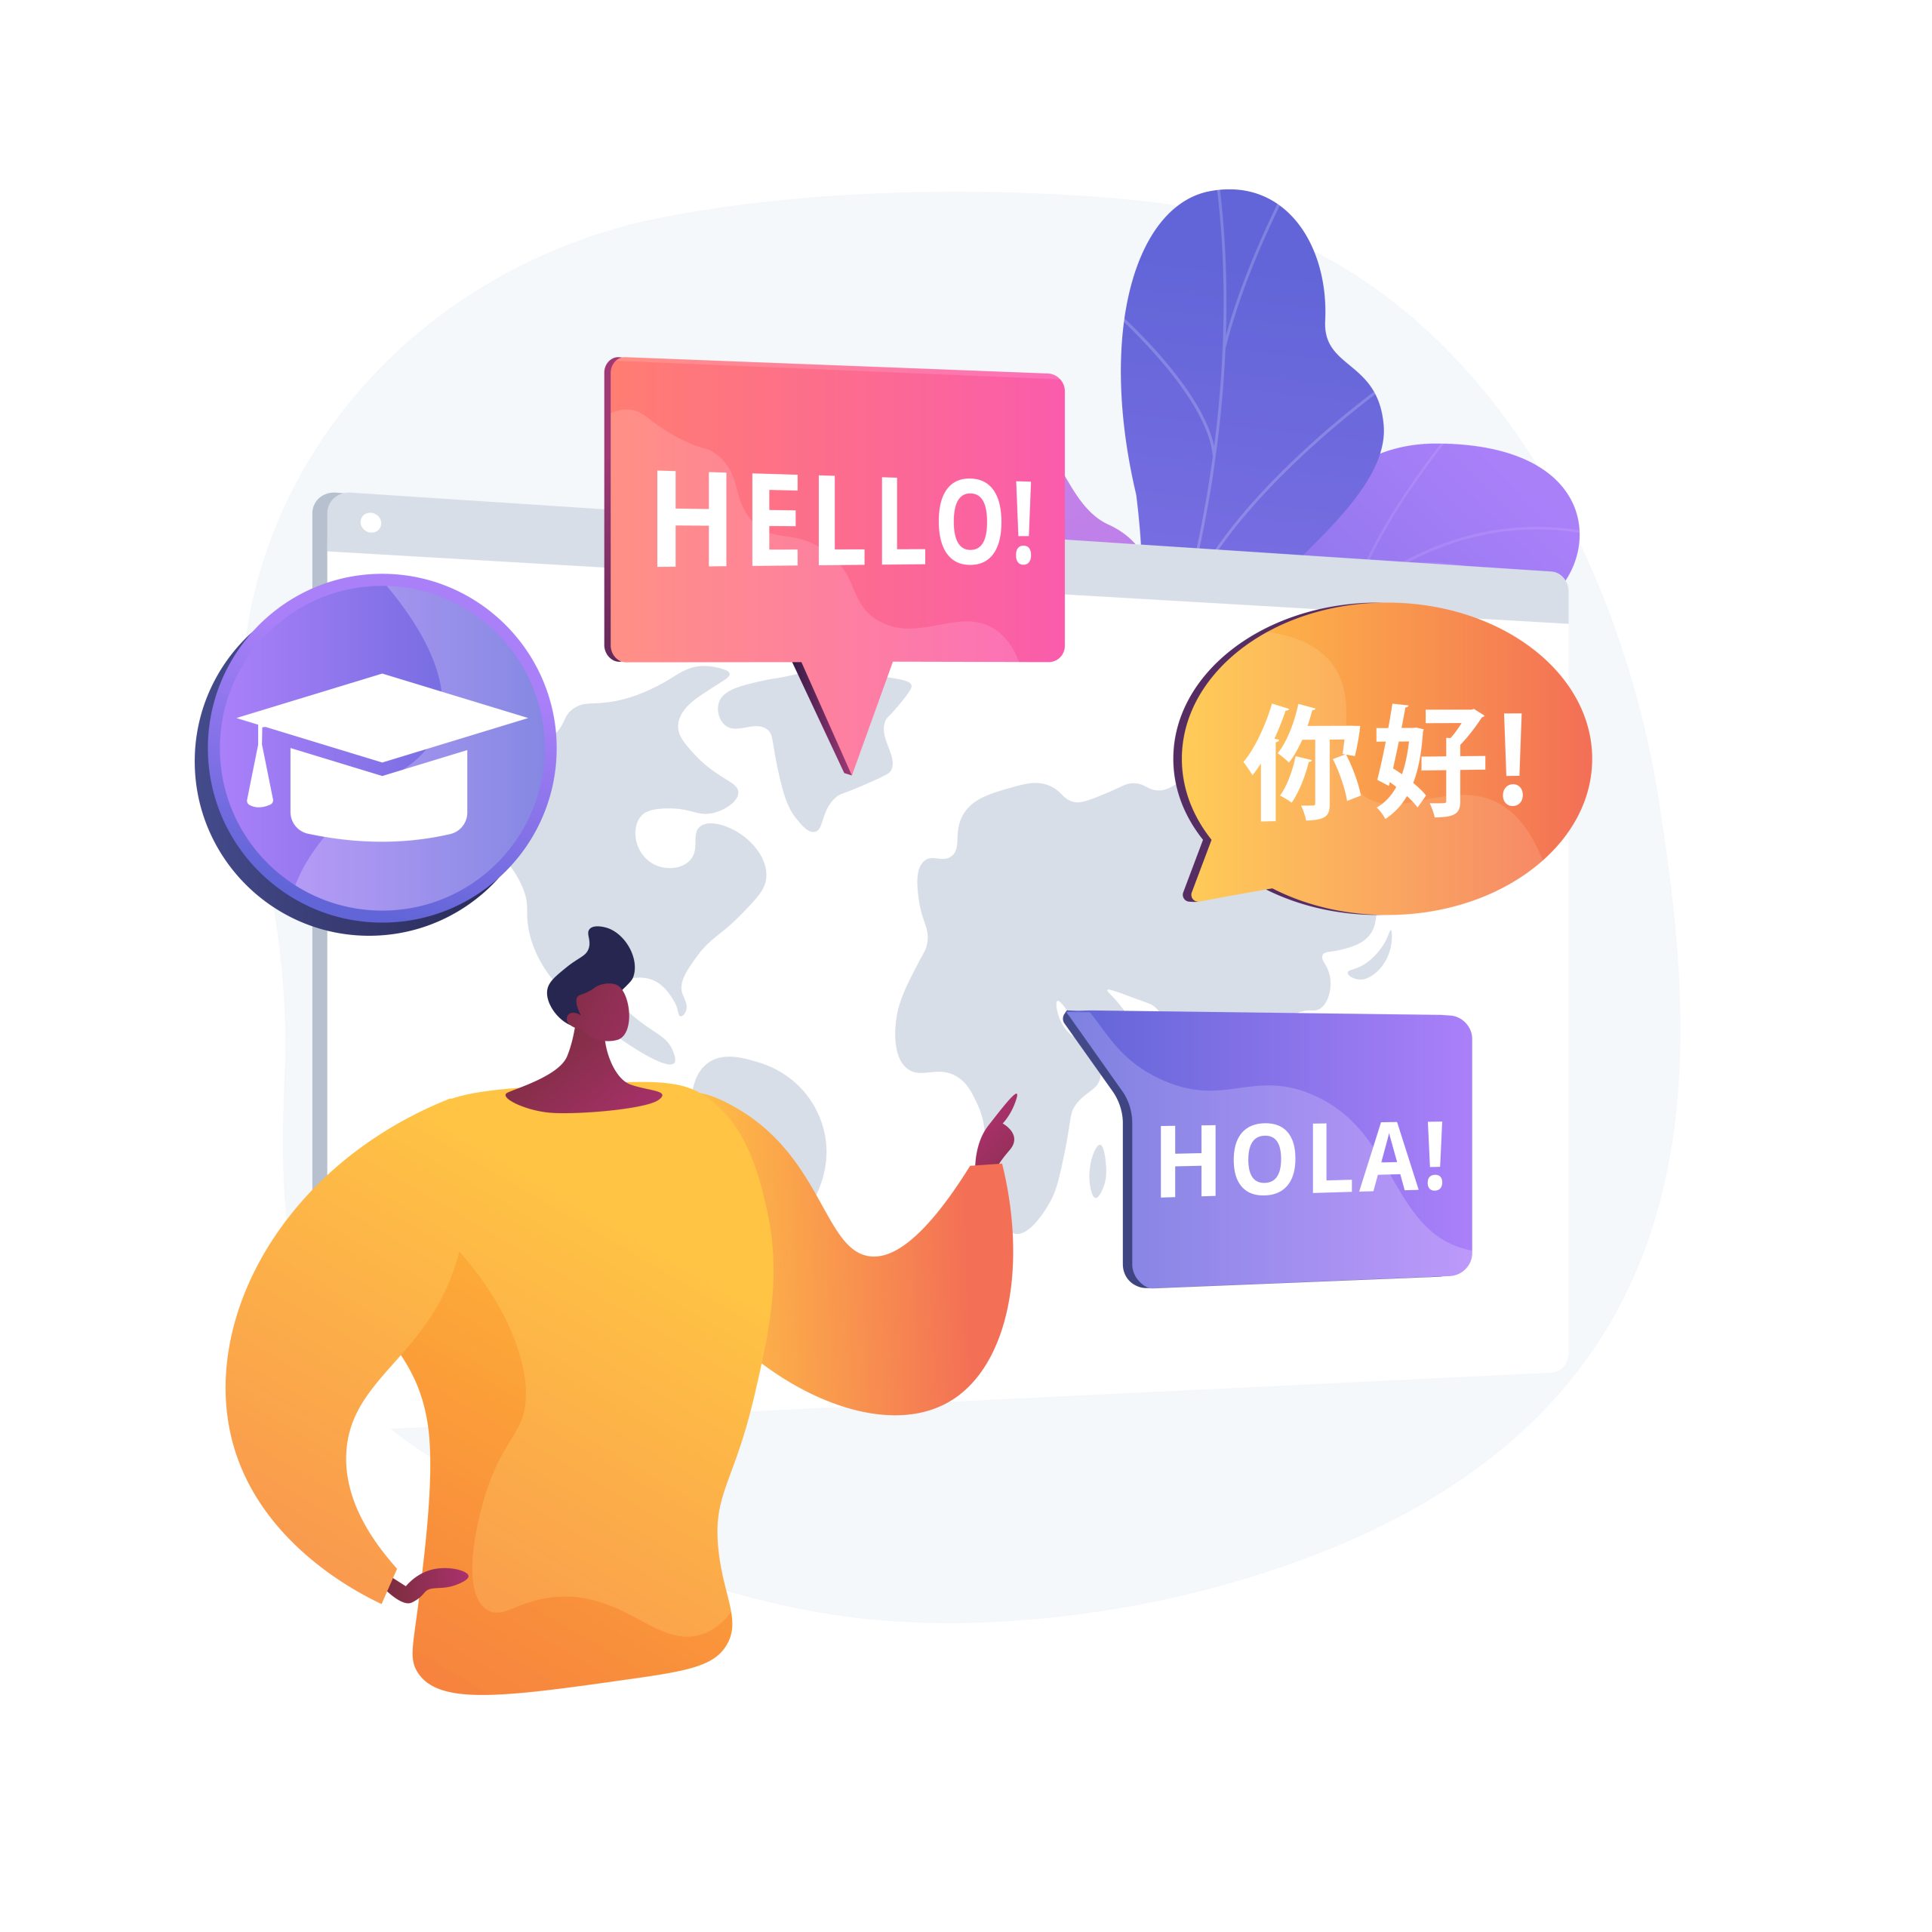 "Ciao" appare su un volantino in diverse lingue.